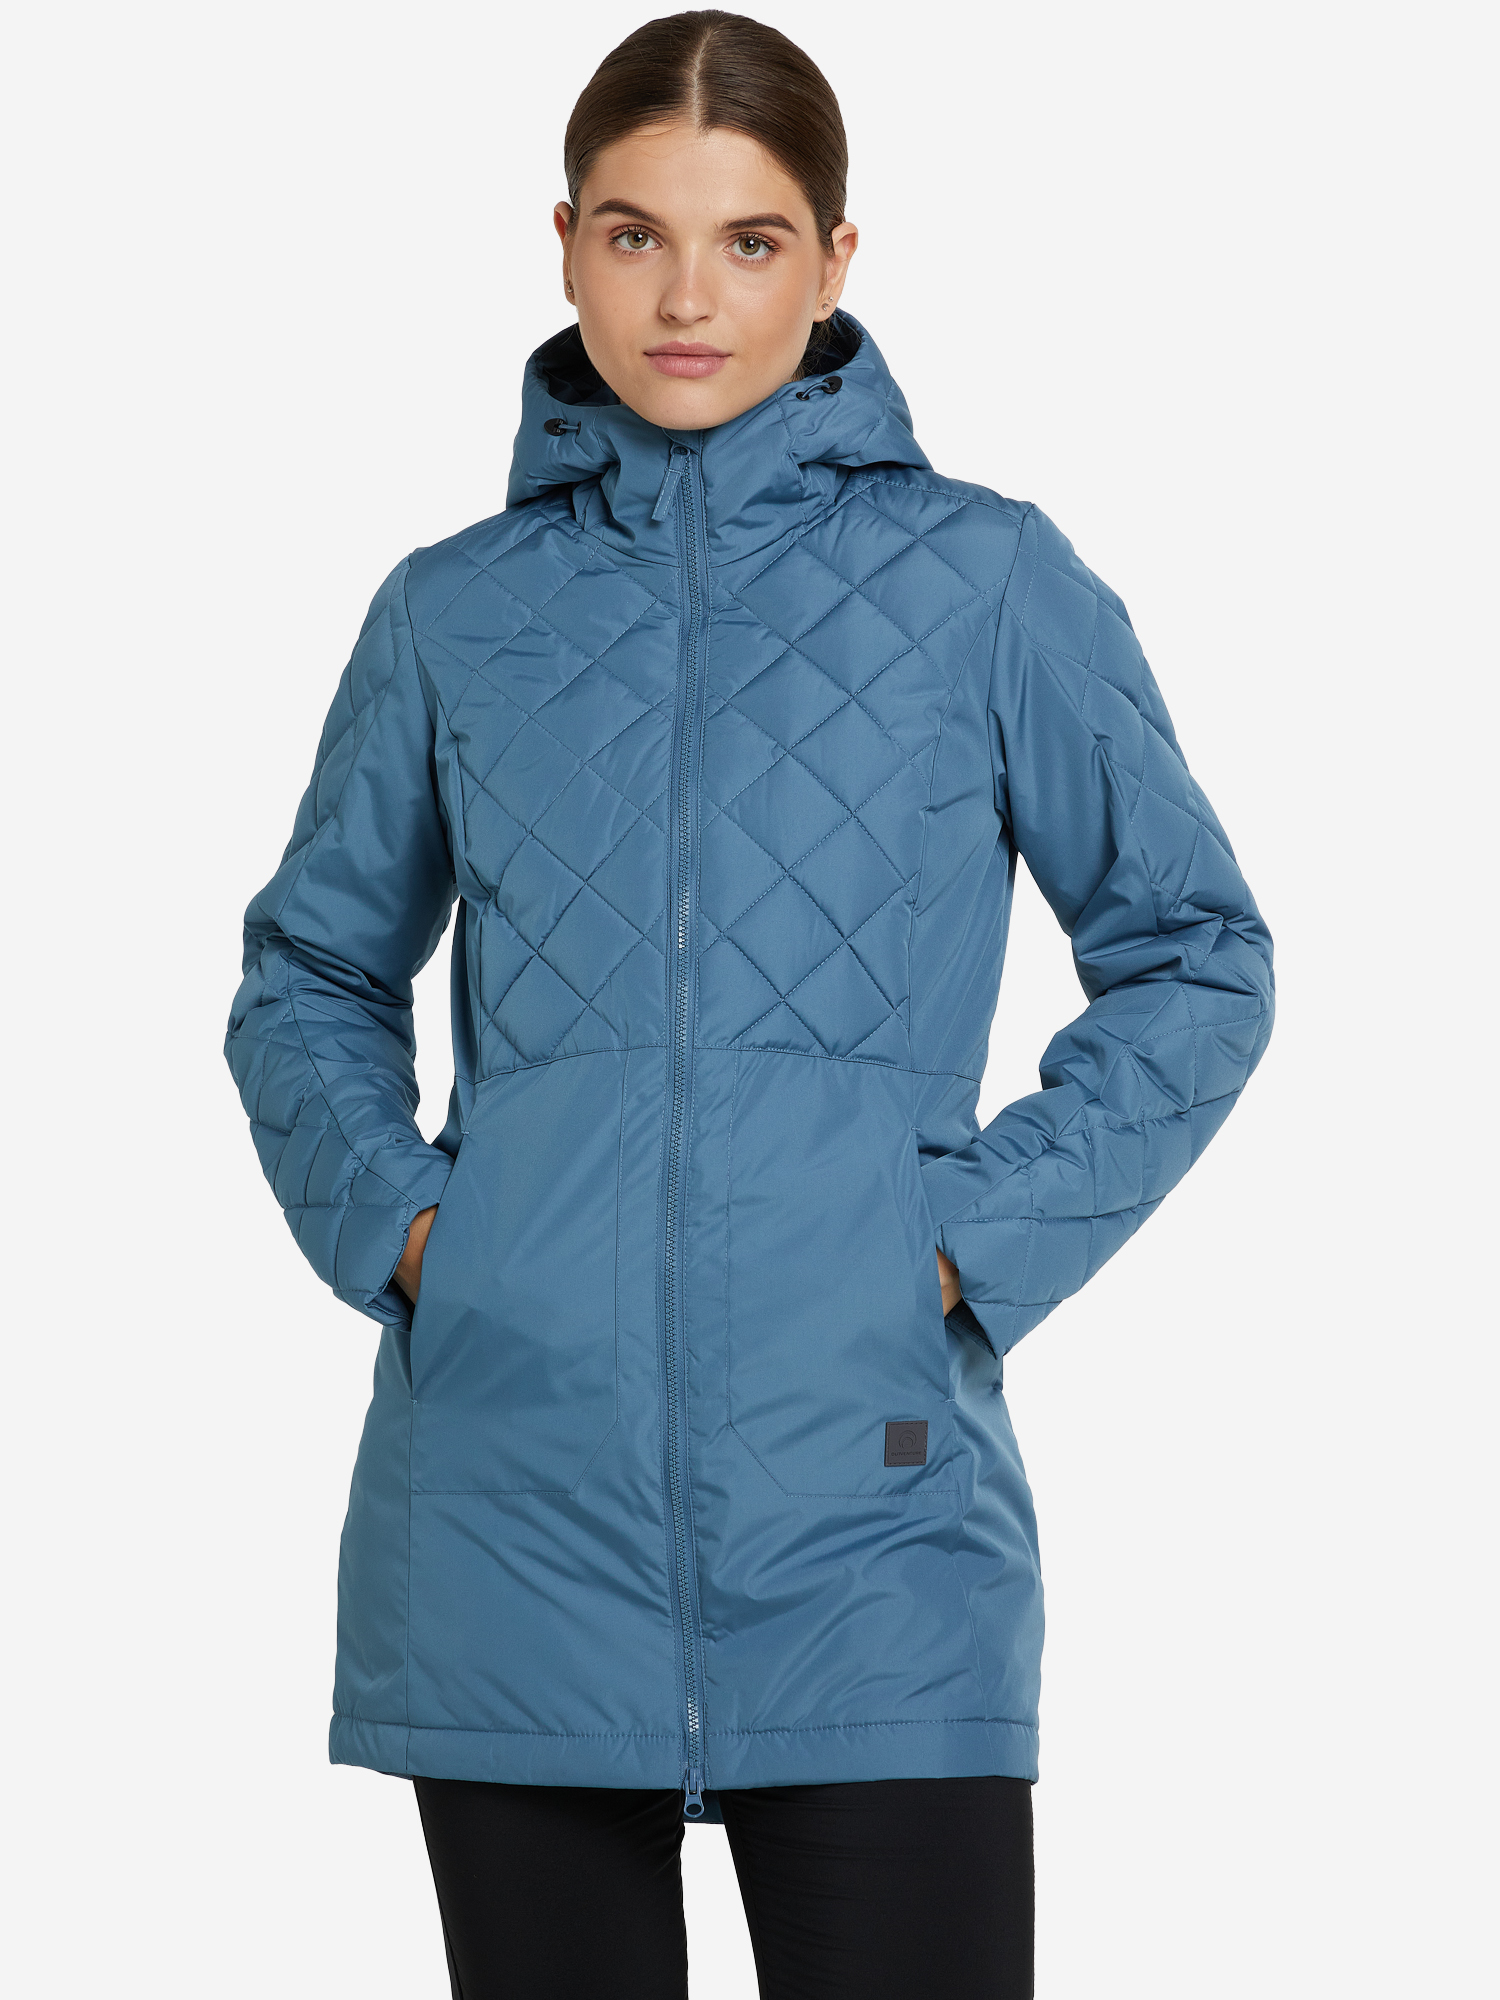 Куртка утепленная женская Outventure, Синий куртка софтшелл для мальчиков outventure серый